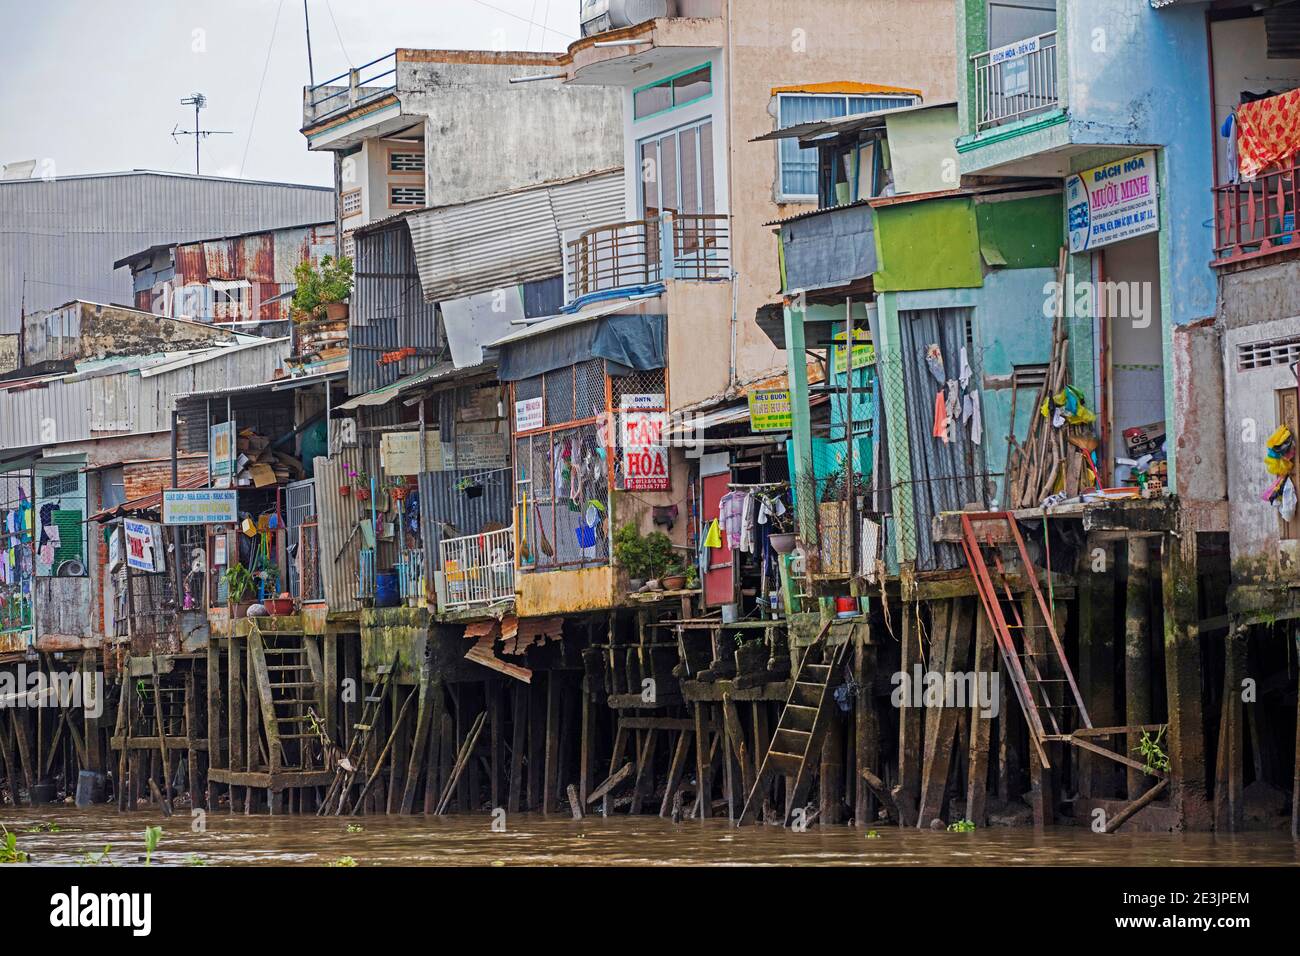 Stilt houses in the Mekong Delta near Can Tho, Vietnam Stock Photo